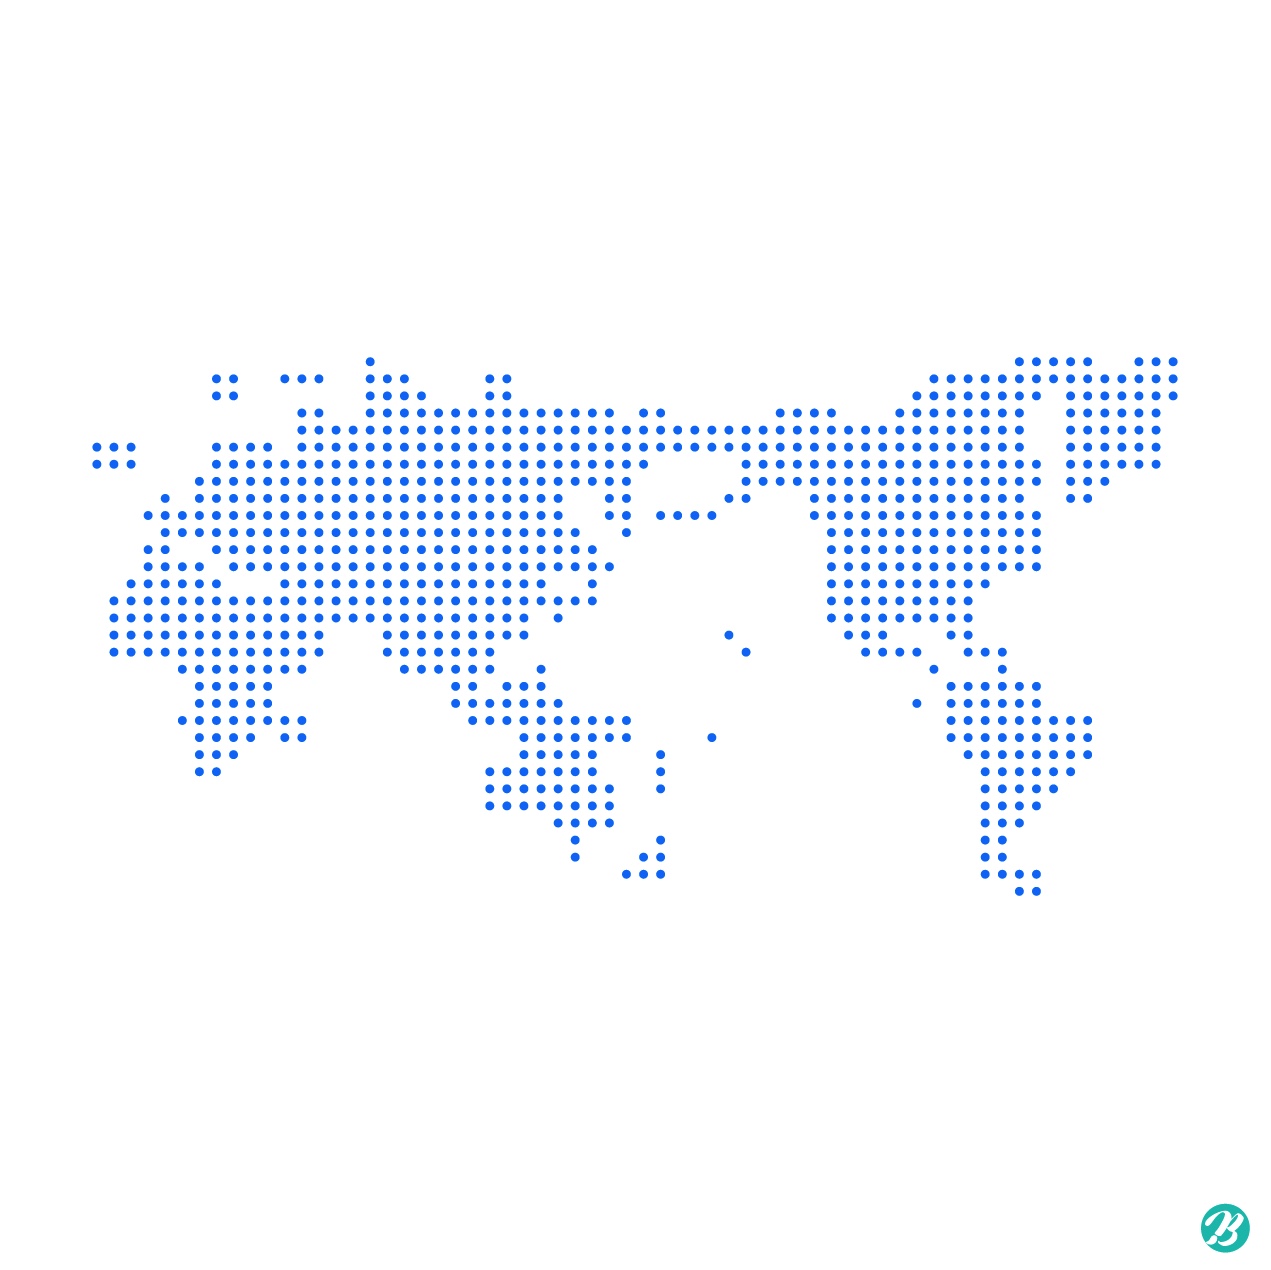 세계지도 도트아트 일러스트 Ai 다운로드 Download World Map Dot Art Vector - Urbanbrush